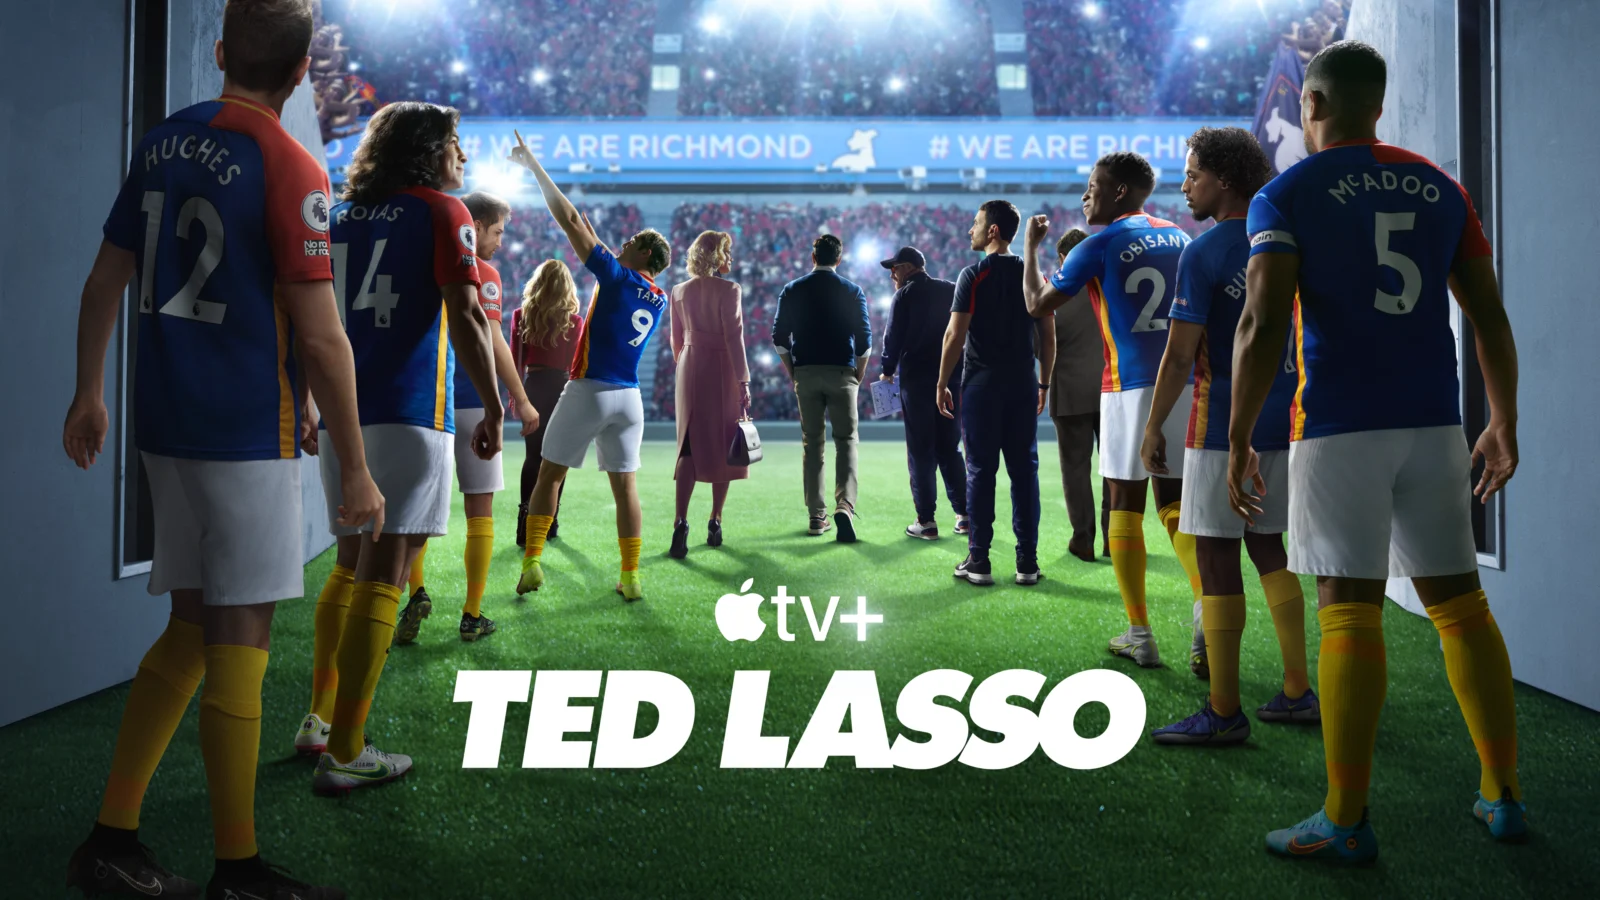 Ted Lasso 3 in arrivo su Apple TV+ dal 18 marzo, ecco il teaser trailer italiano